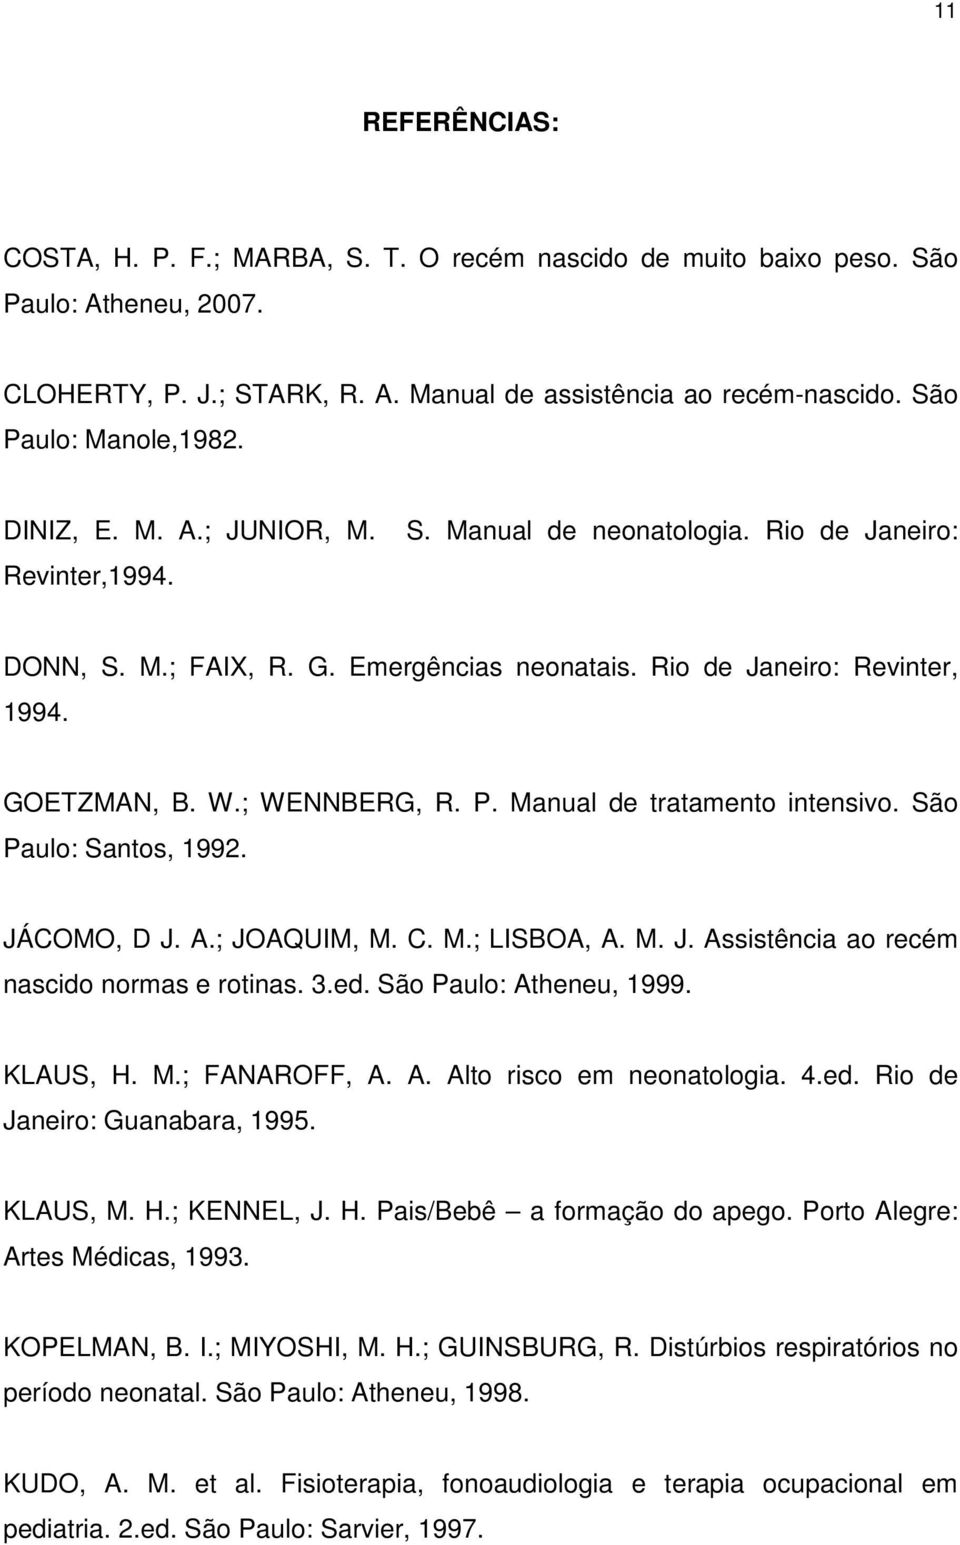 GOETZMAN, B. W.; WENNBERG, R. P. Manual de tratamento intensivo. São Paulo: Santos, 1992. JÁCOMO, D J. A.; JOAQUIM, M. C. M.; LISBOA, A. M. J. Assistência ao recém nascido normas e rotinas. 3.ed.